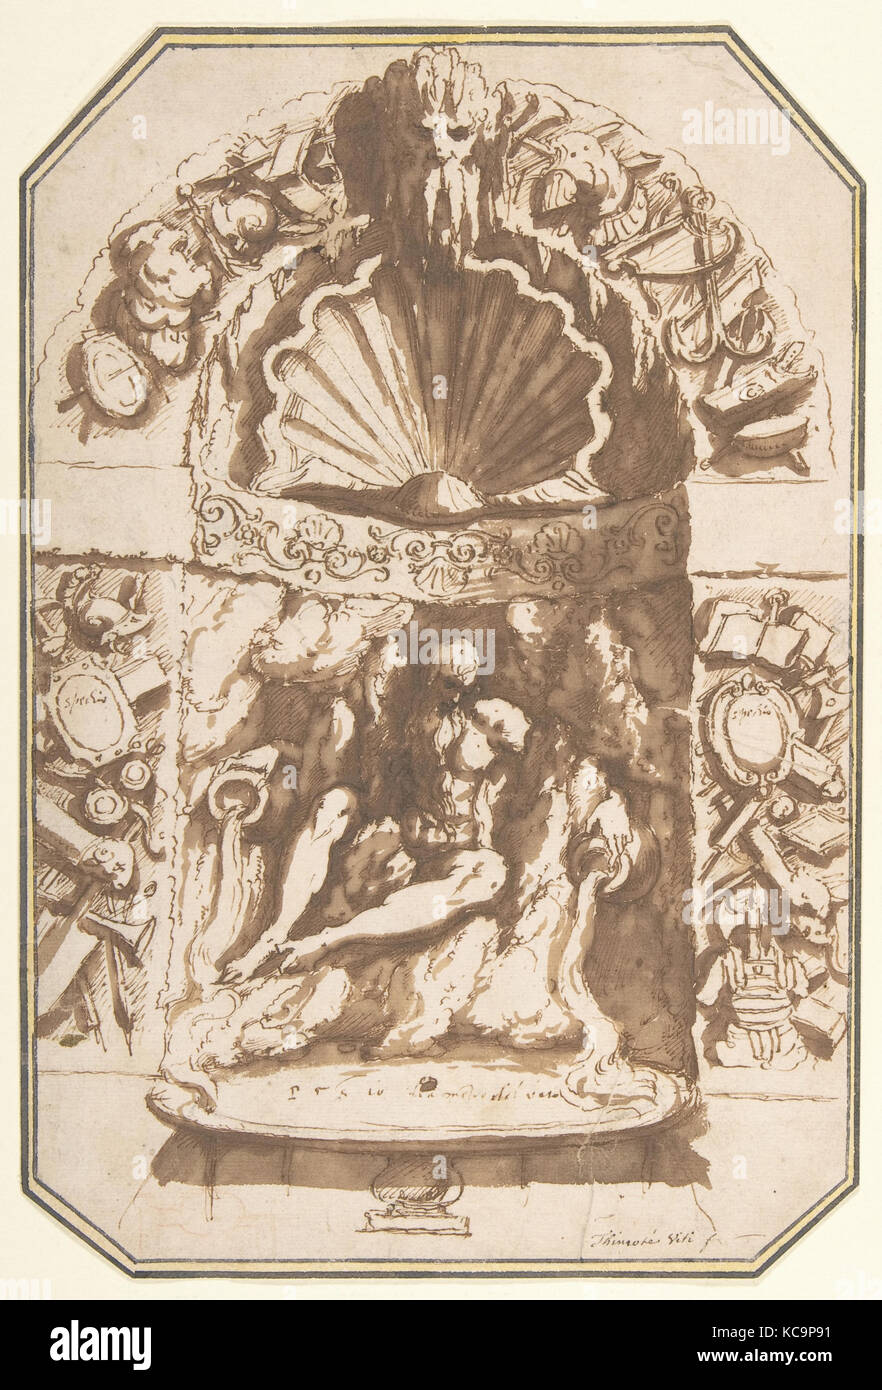 Ein Brunnen in einer Grotte, Ca. 1598, Stift und Braun, Pinsel und Braun waschen, über Spuren von schwarzen und roten Kreide, maximale, Ecken Stockfoto